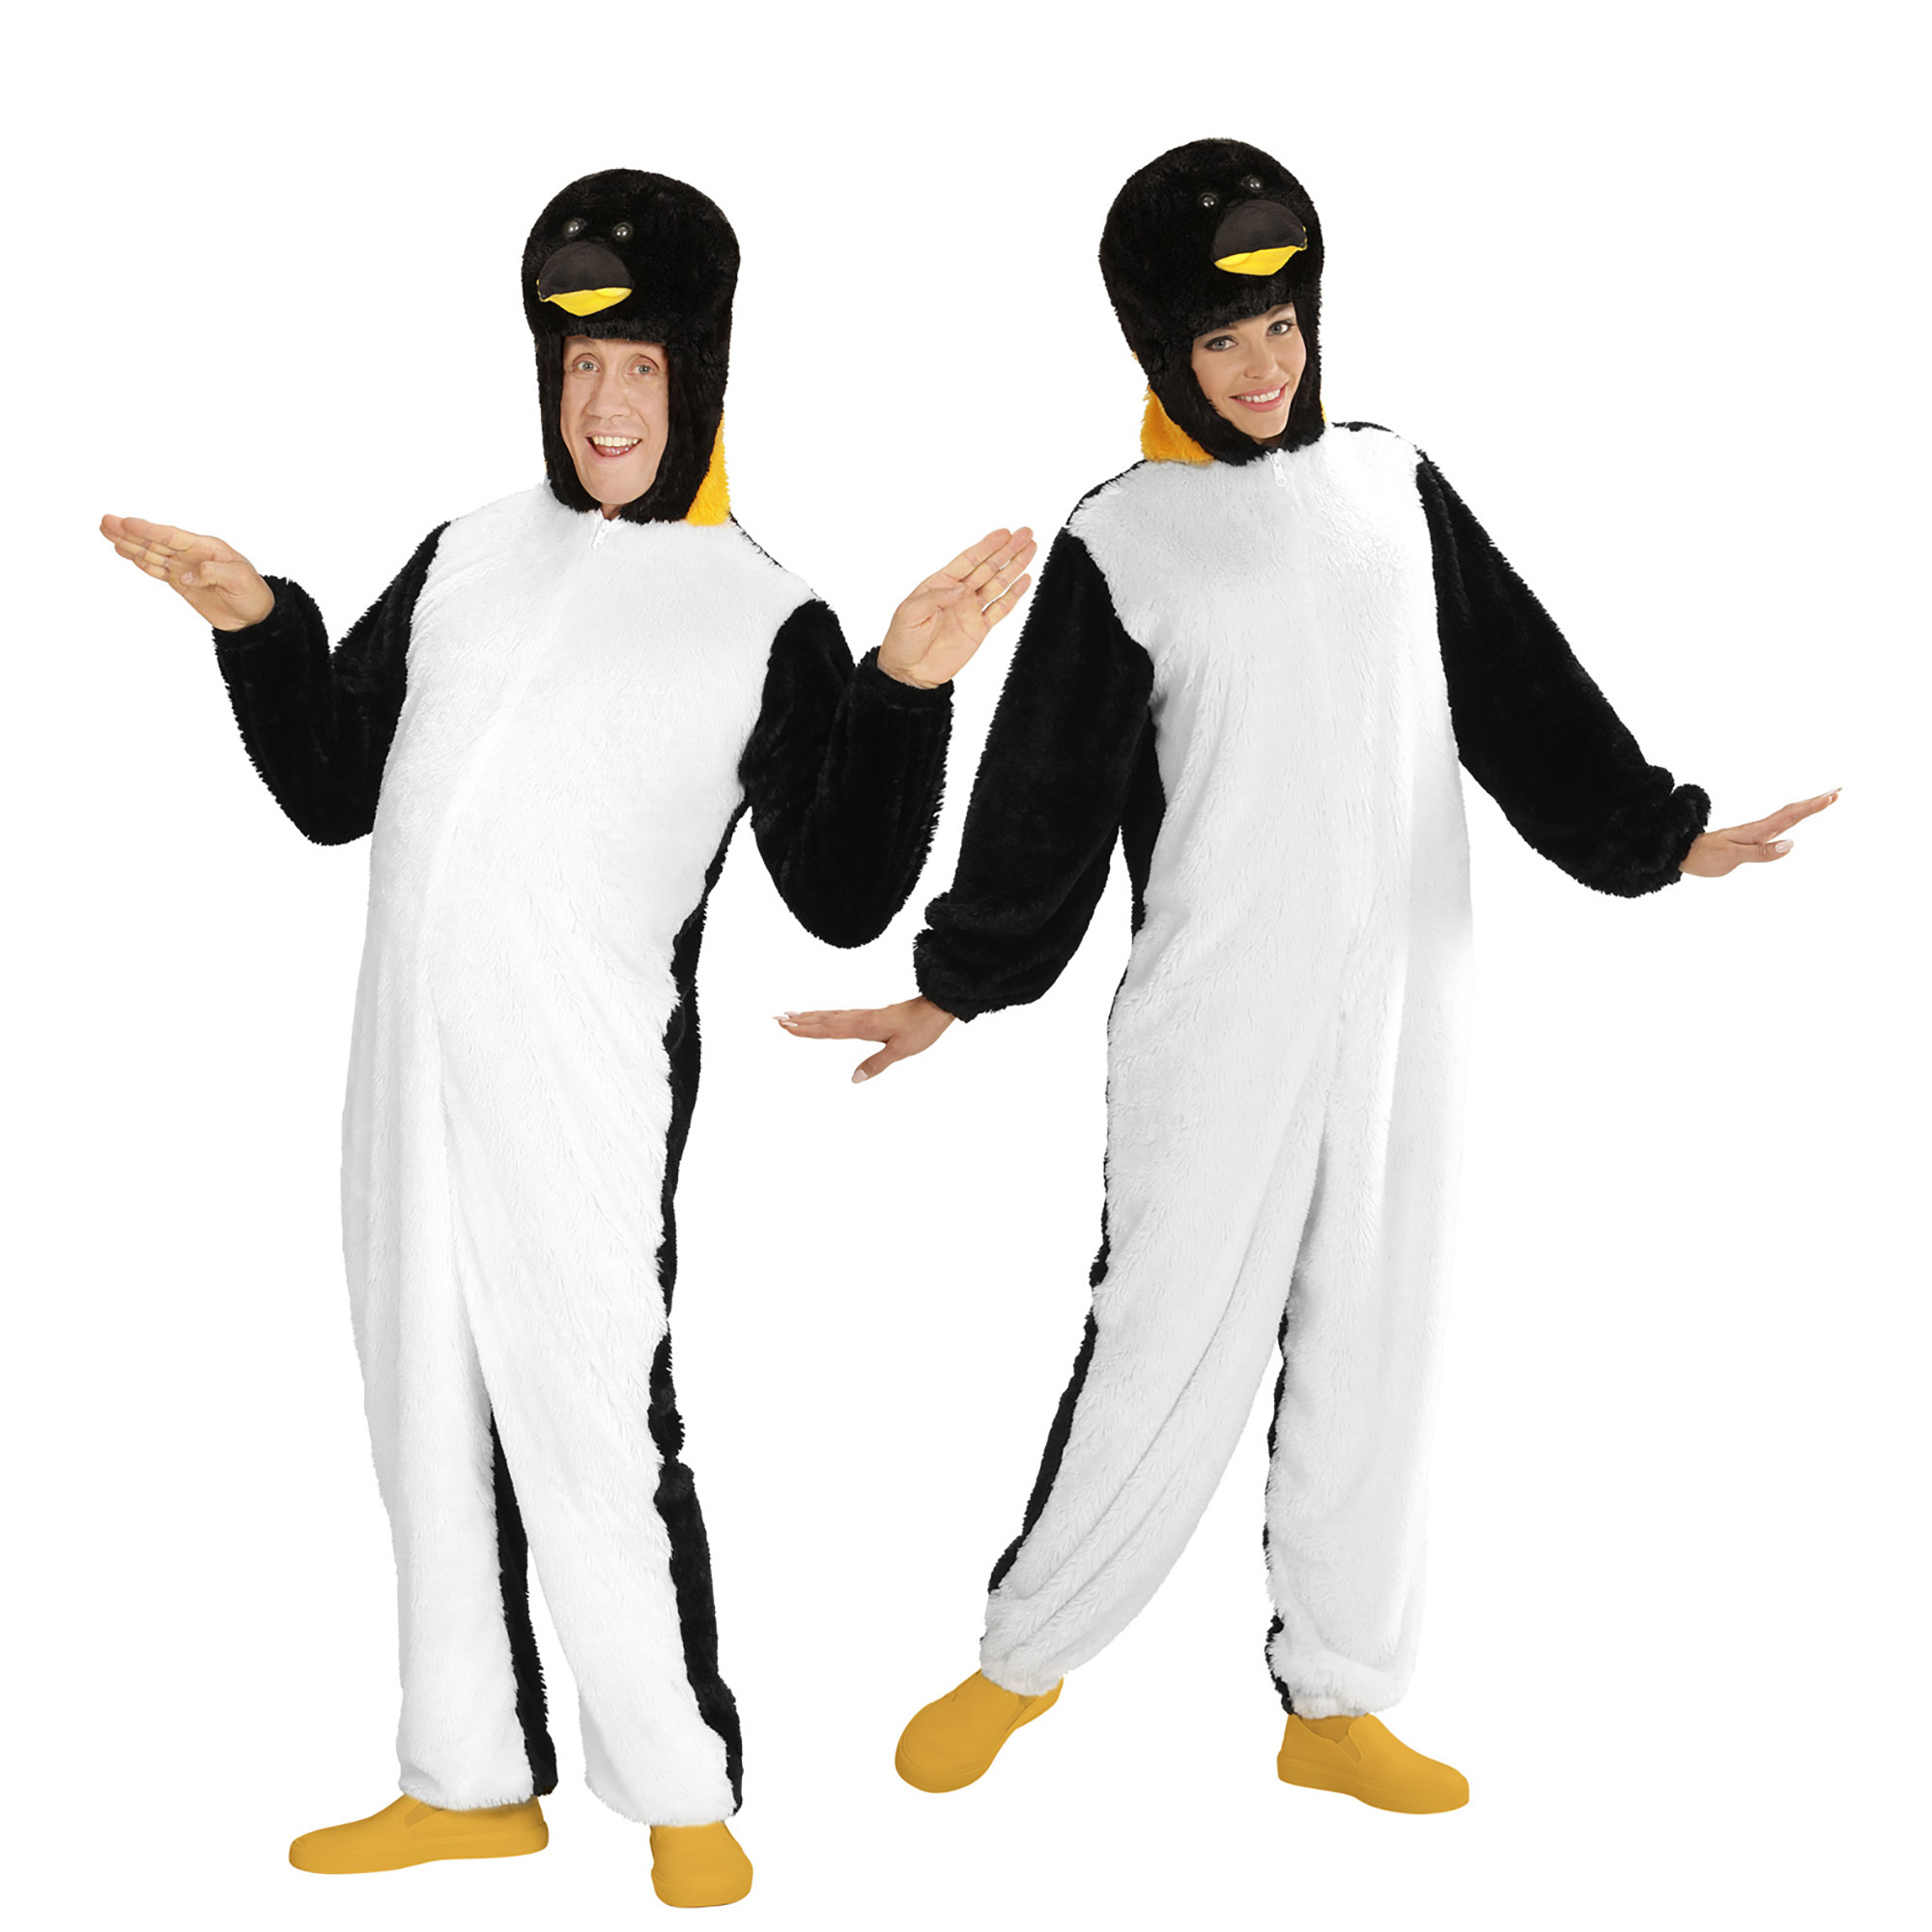 Pinguin van de noordpool volwassen kostuum pluche